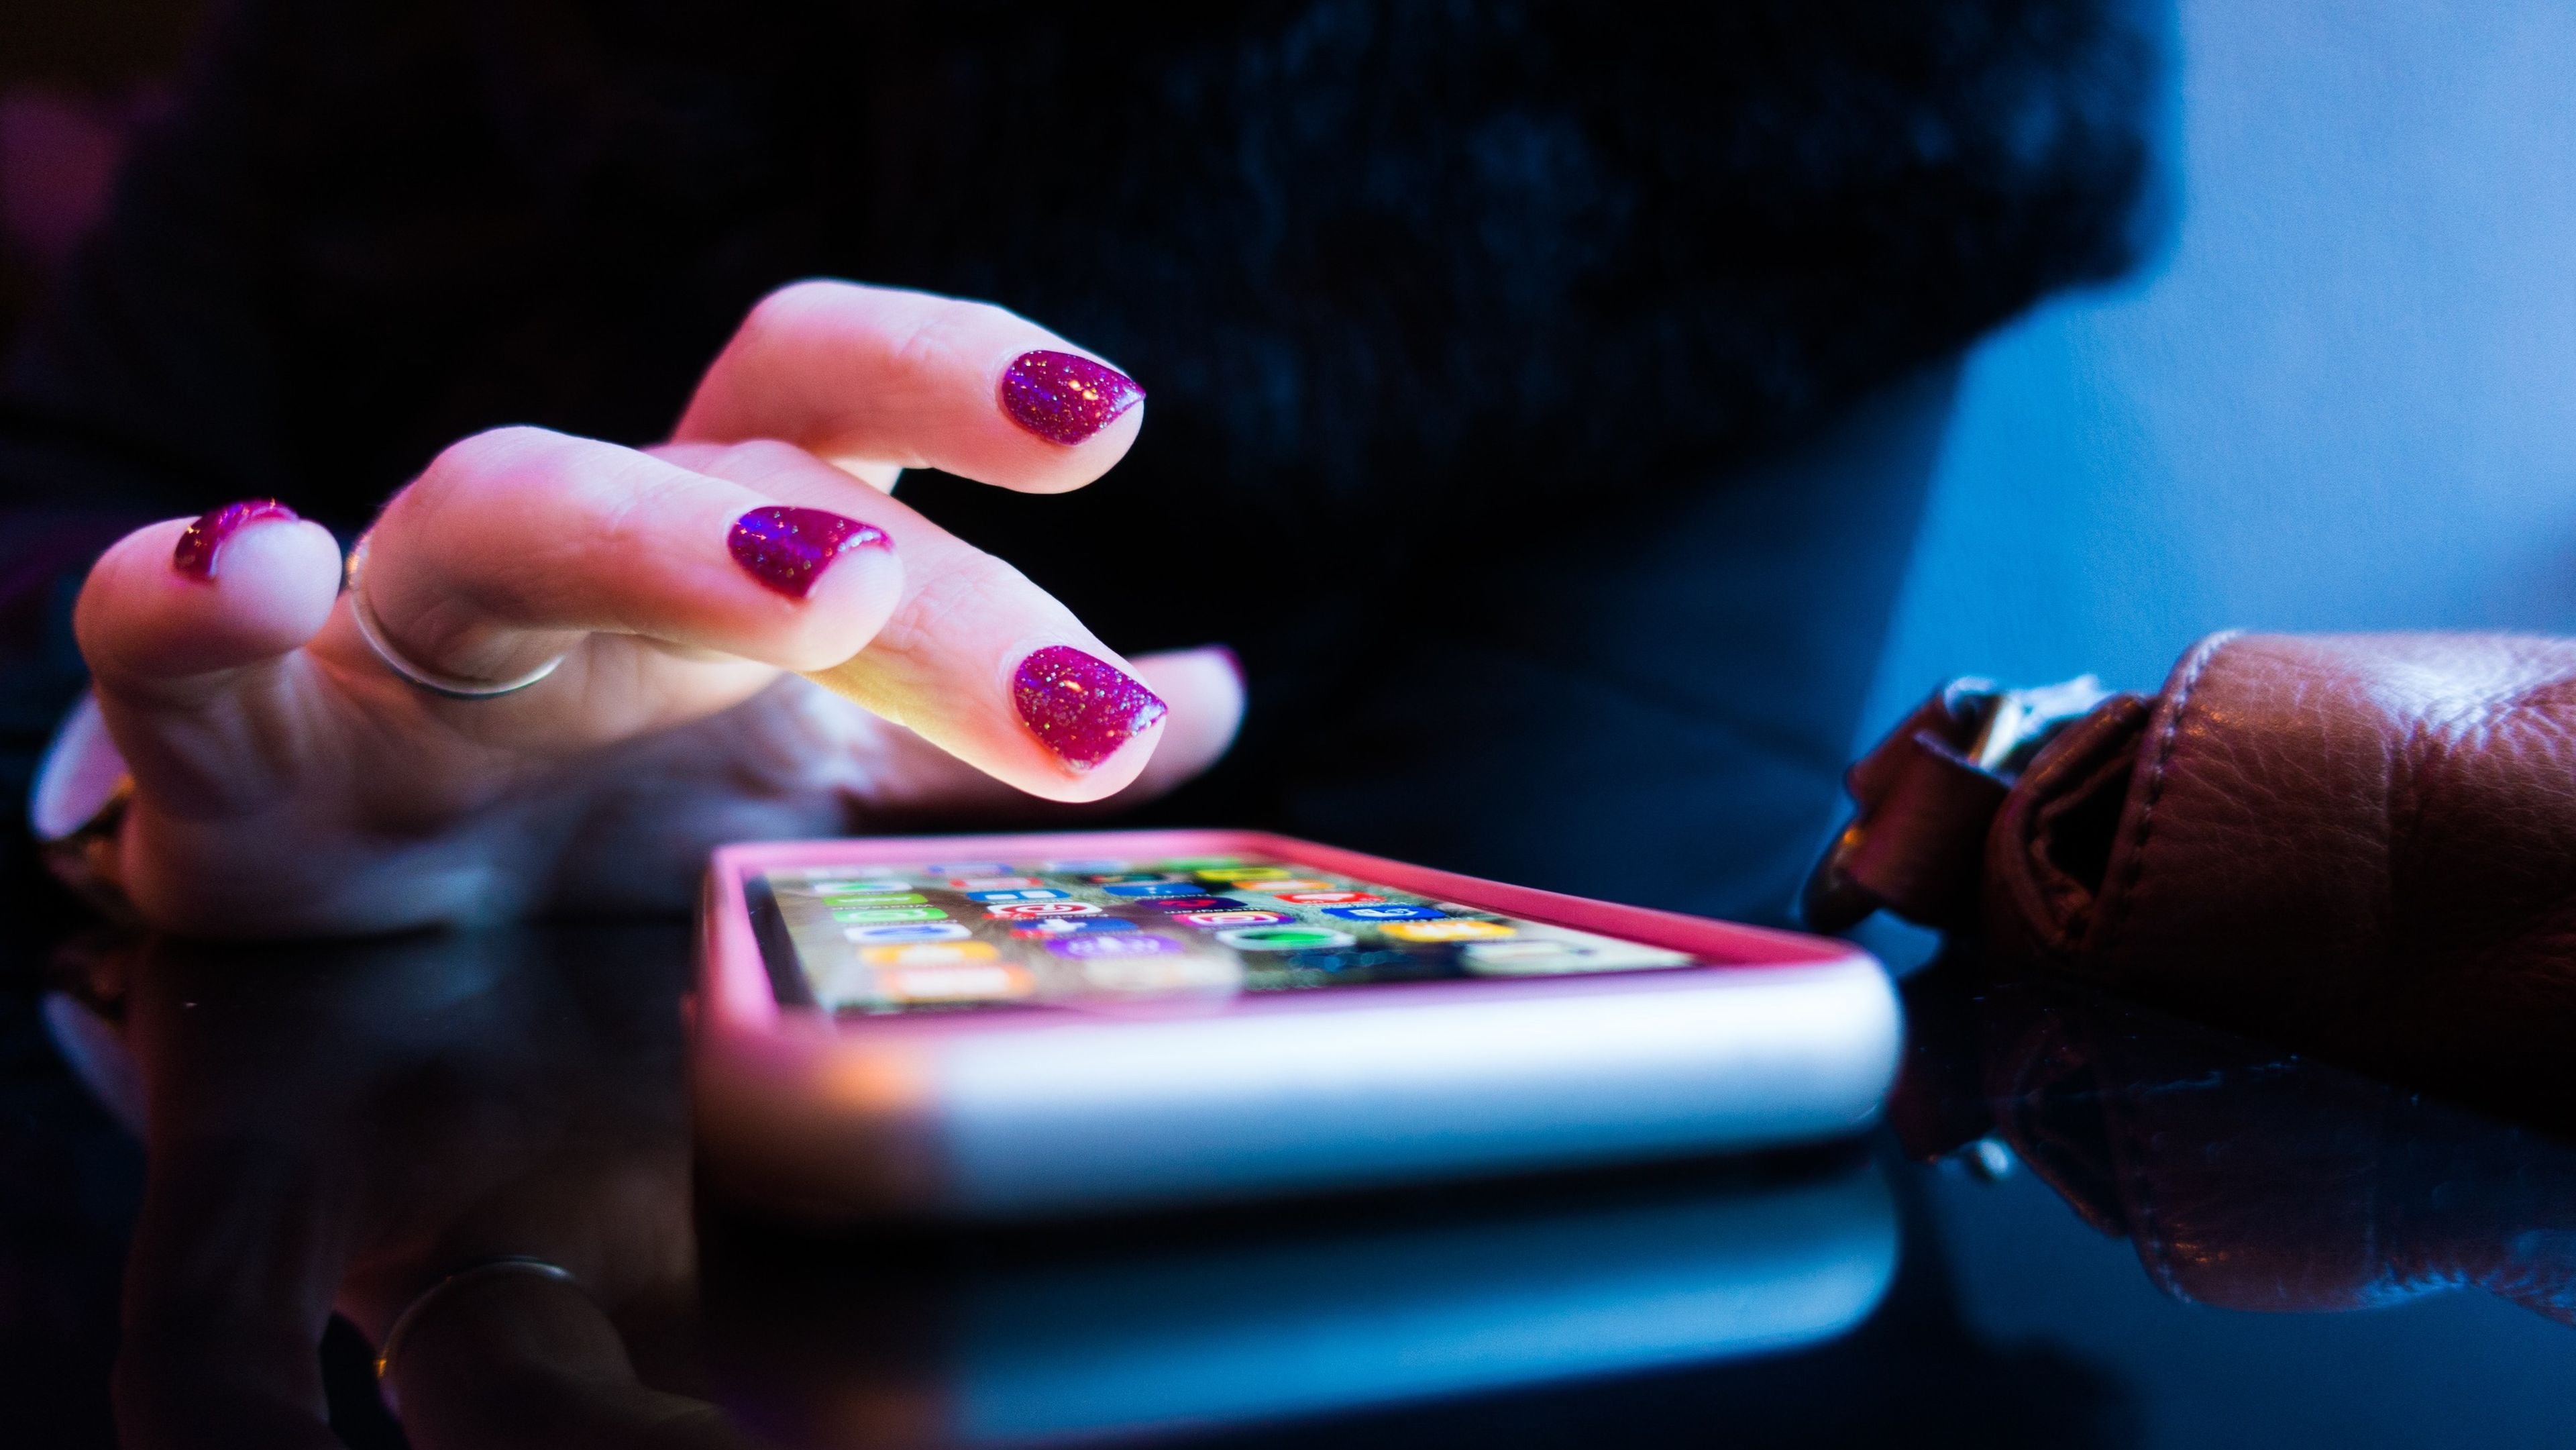 Mujer con las uñas pintadas a punto de abrir una aplicación en un móvil con la pantalla encendida